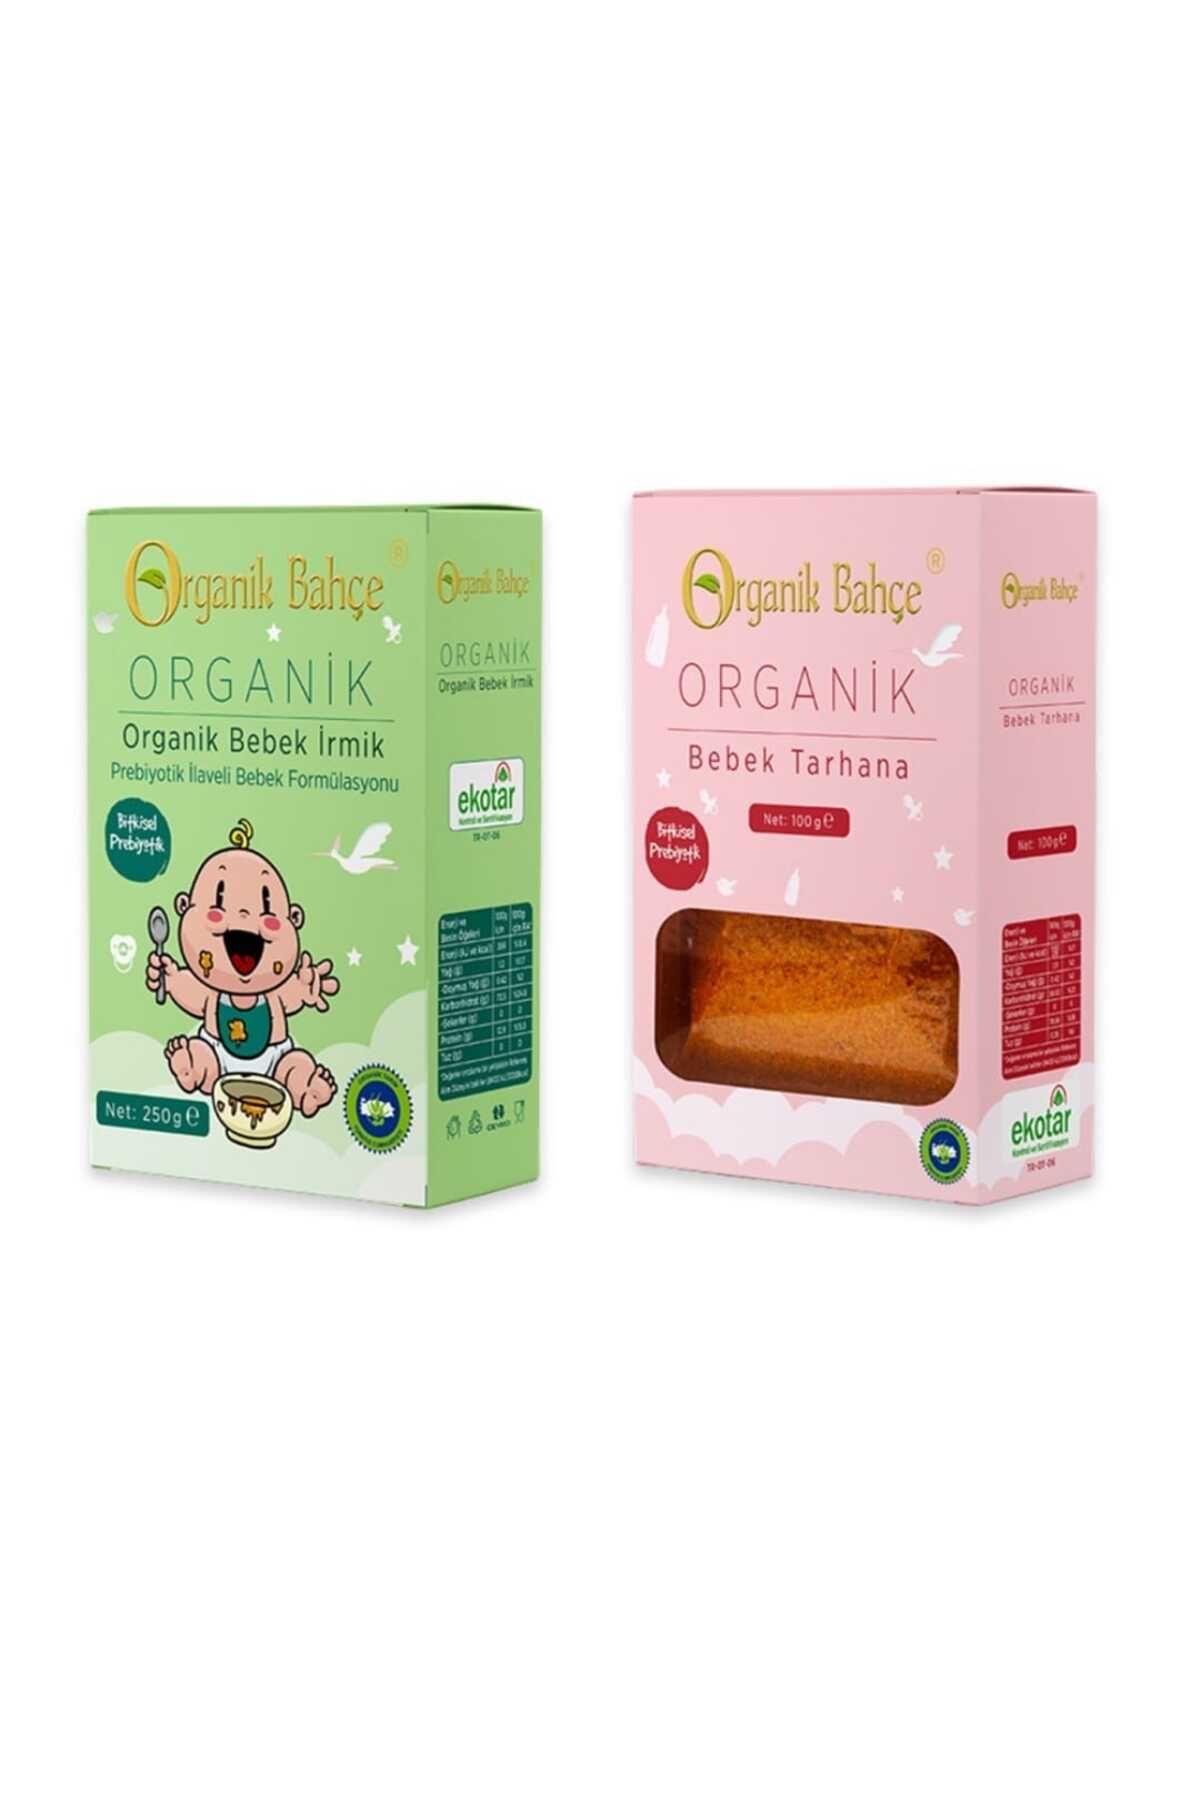 Organik Bahçe Organik Bebek Tarhanası Ve Organik Bebek Irmiği Seti +6 Ay Bebek Ek Gıda